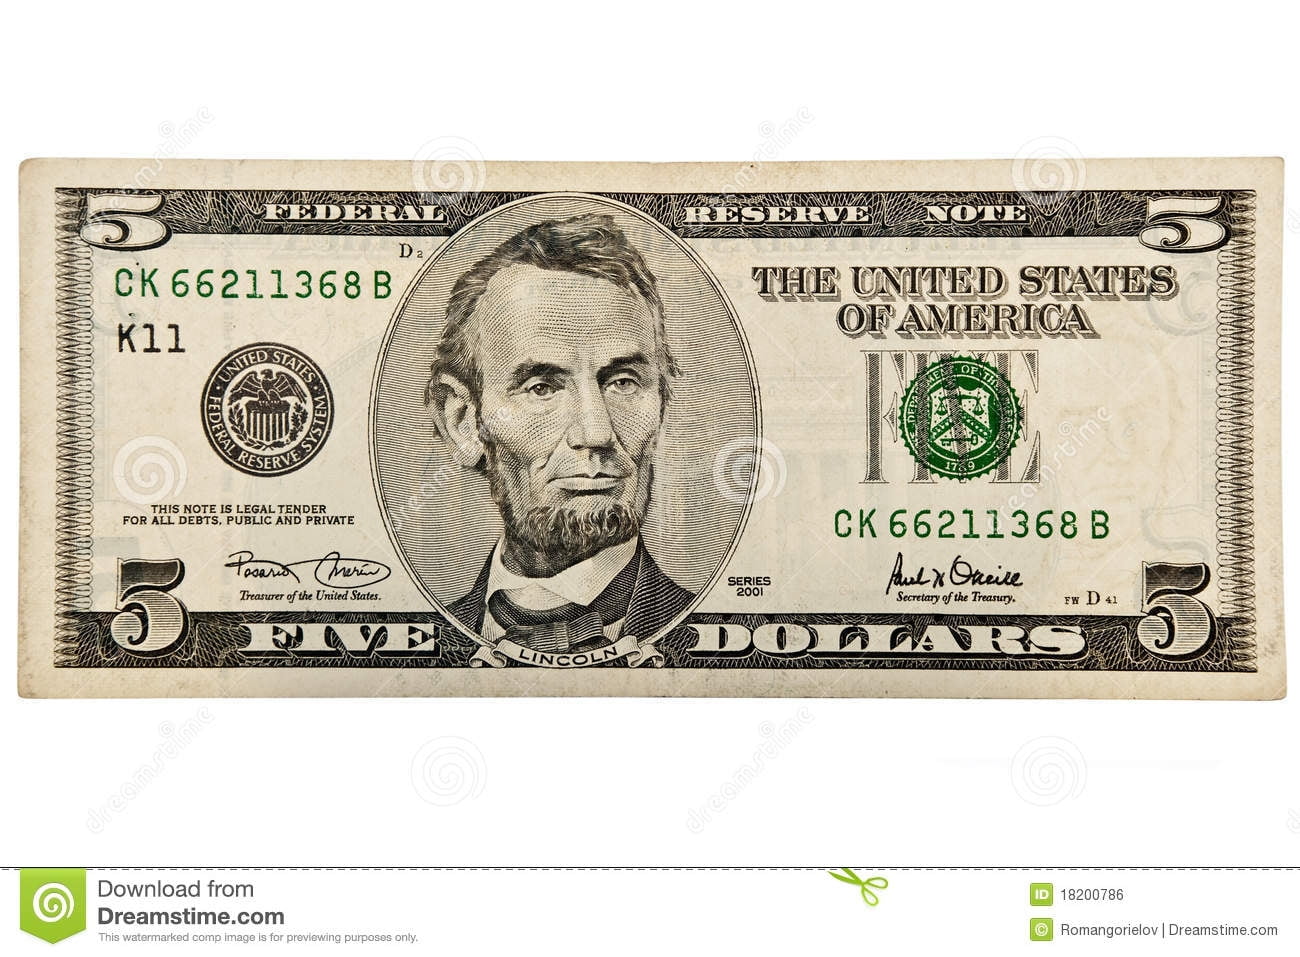 Printable 5 Dollar Bill